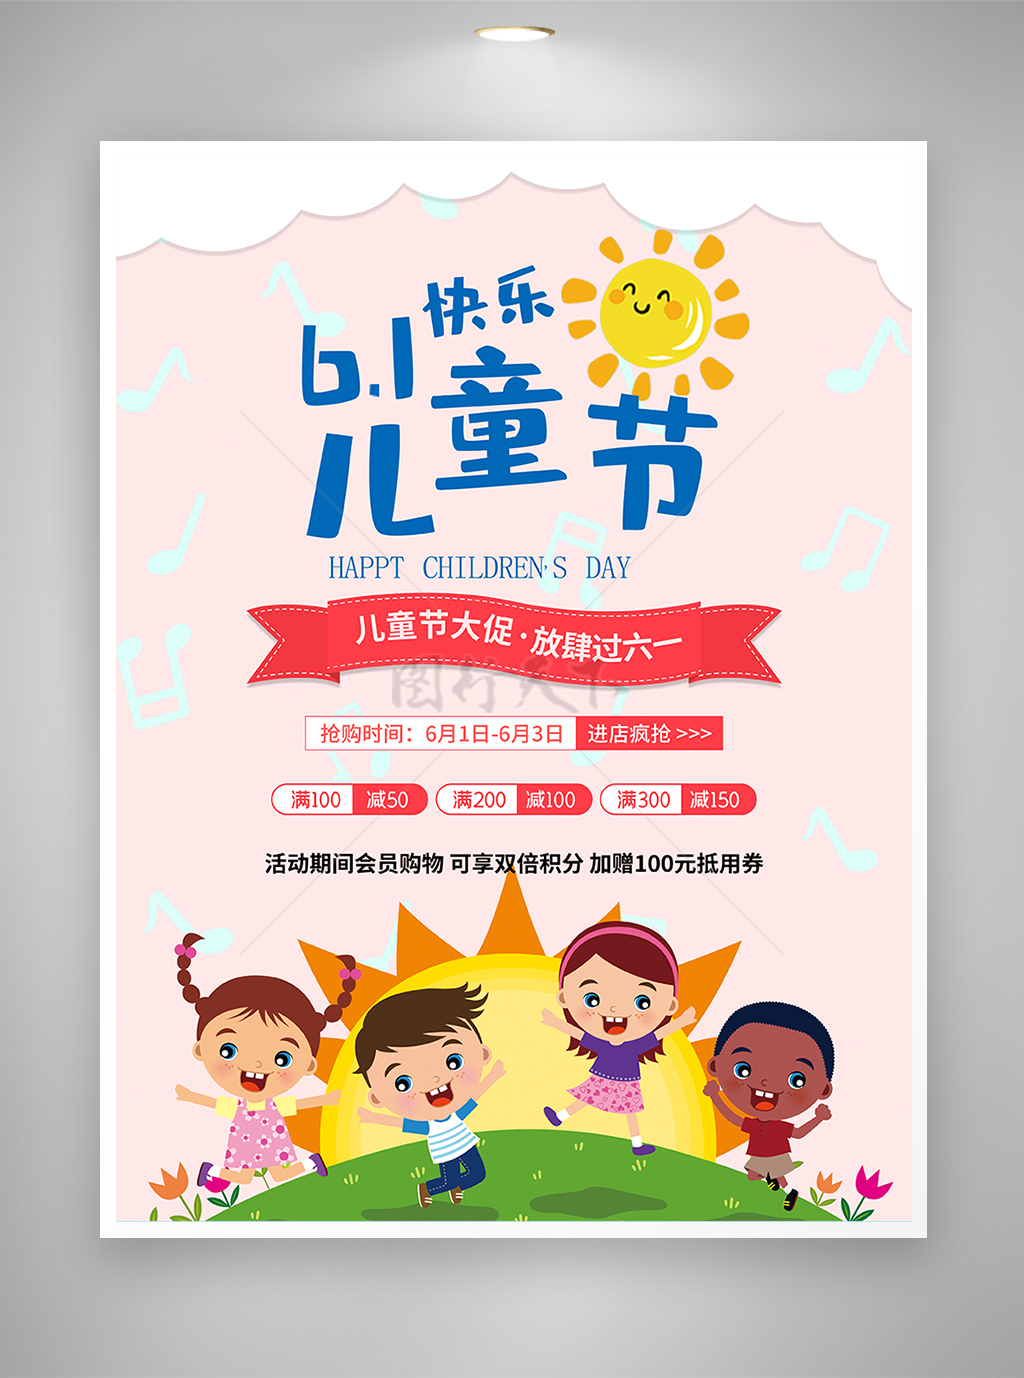 六一儿童节节日促销活动宣传海报